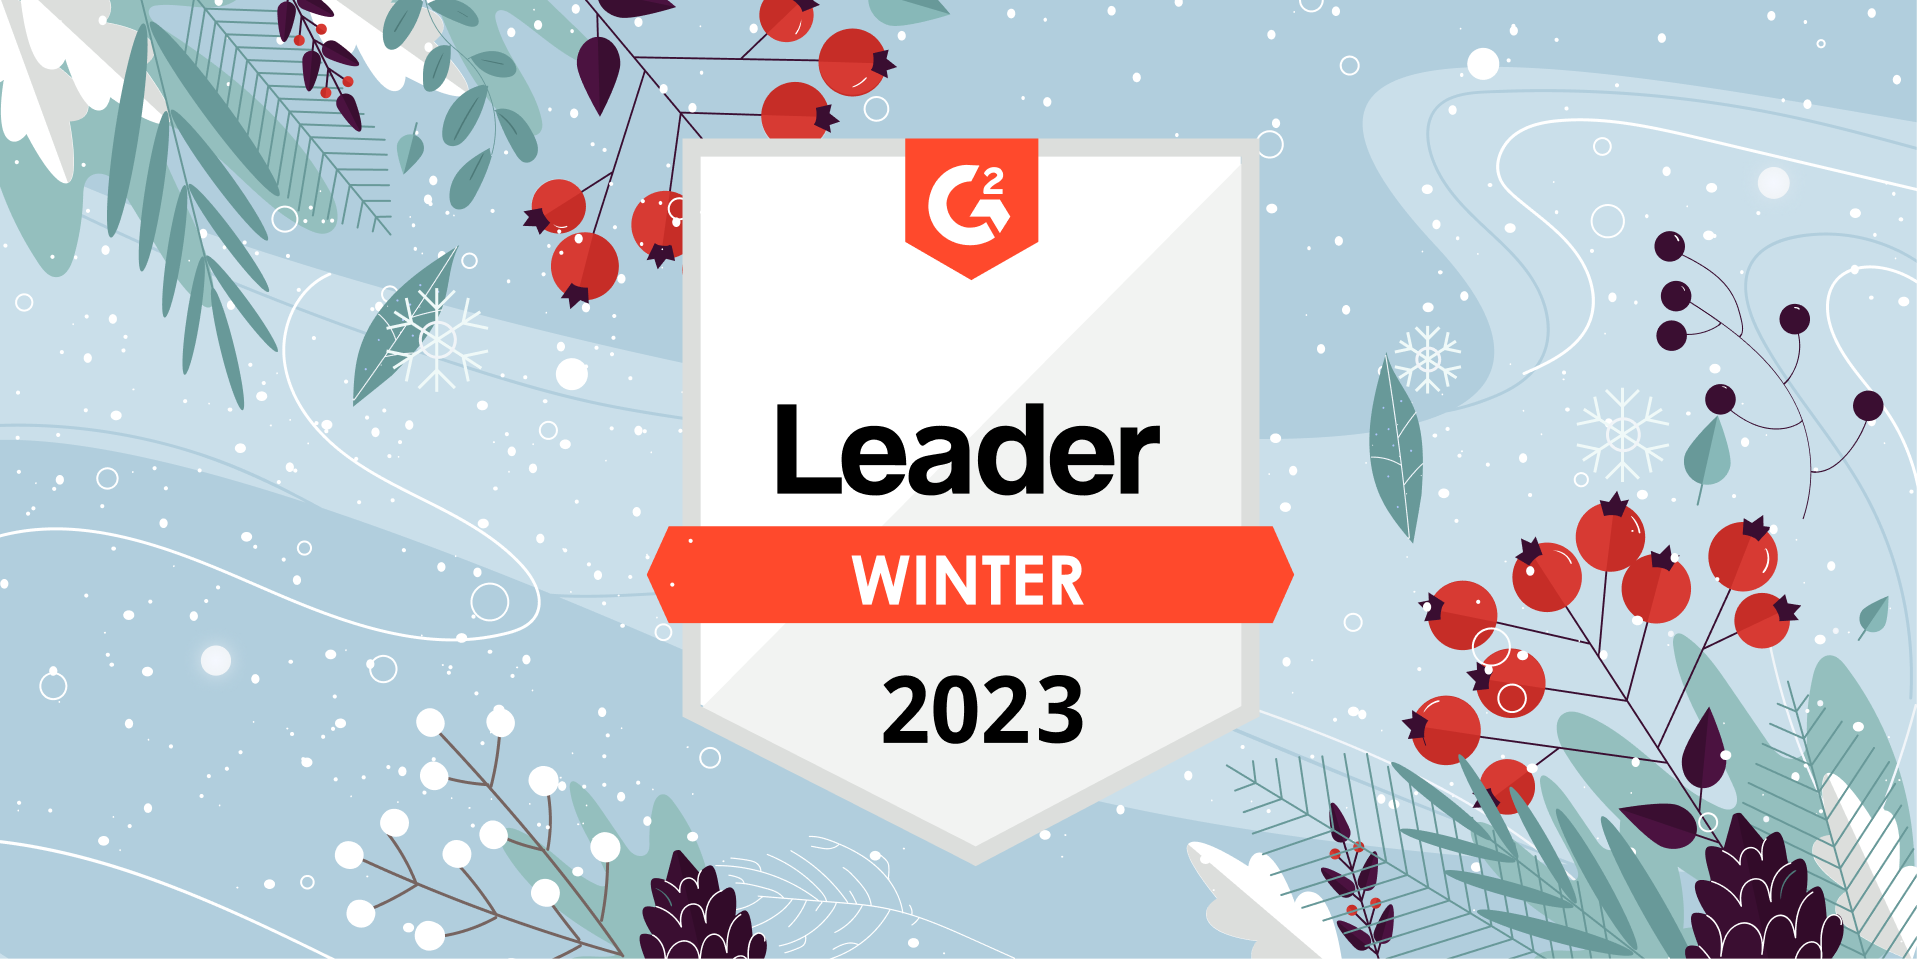 Snov.io Shines Among G2 Winter 2023 Leaders